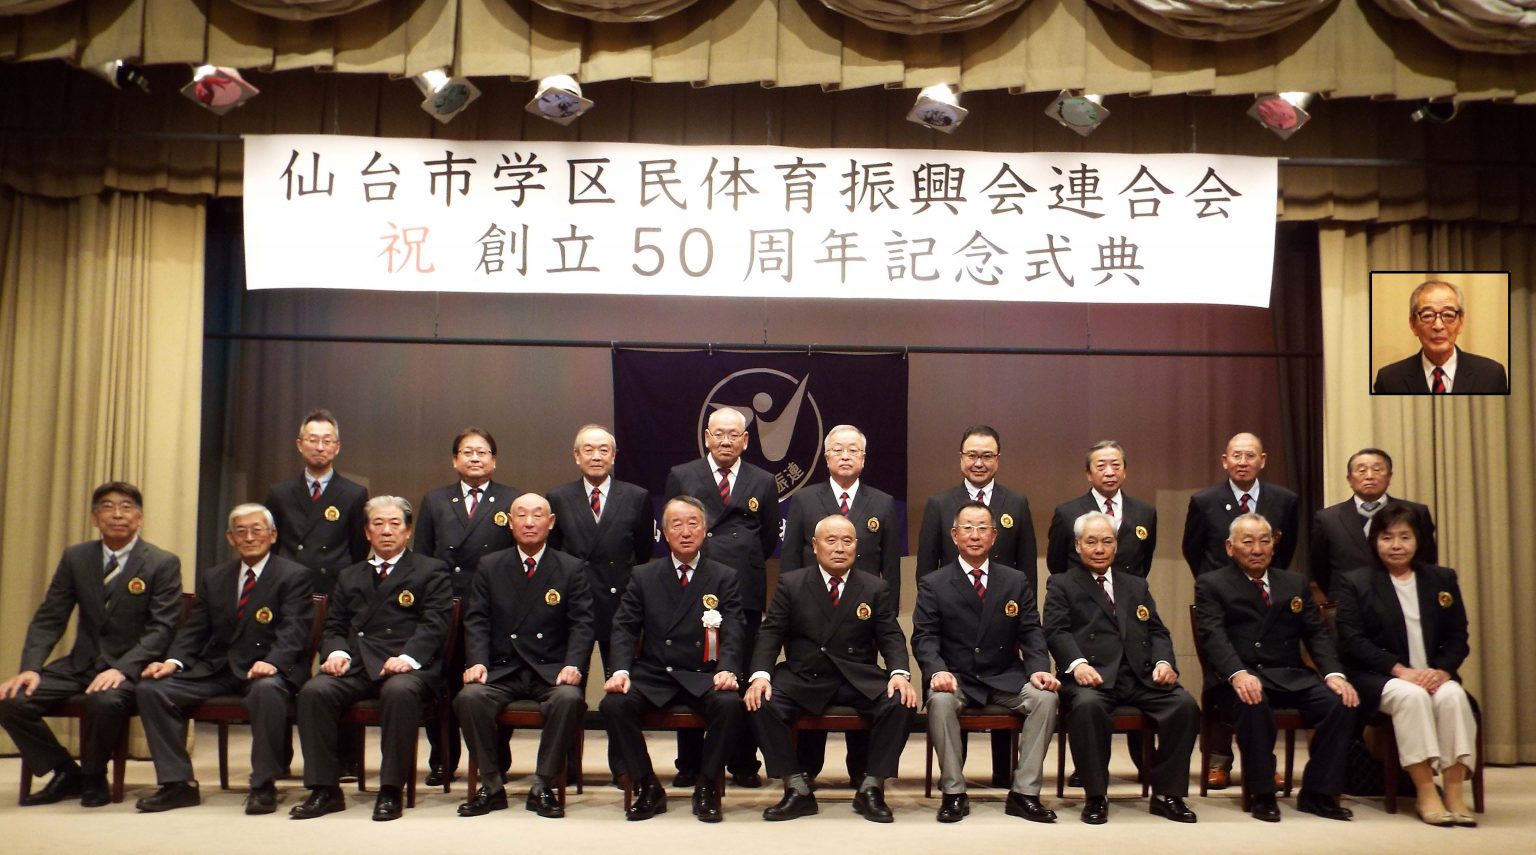 仙台市学区民体育振興会連合会創立50周年記念式典